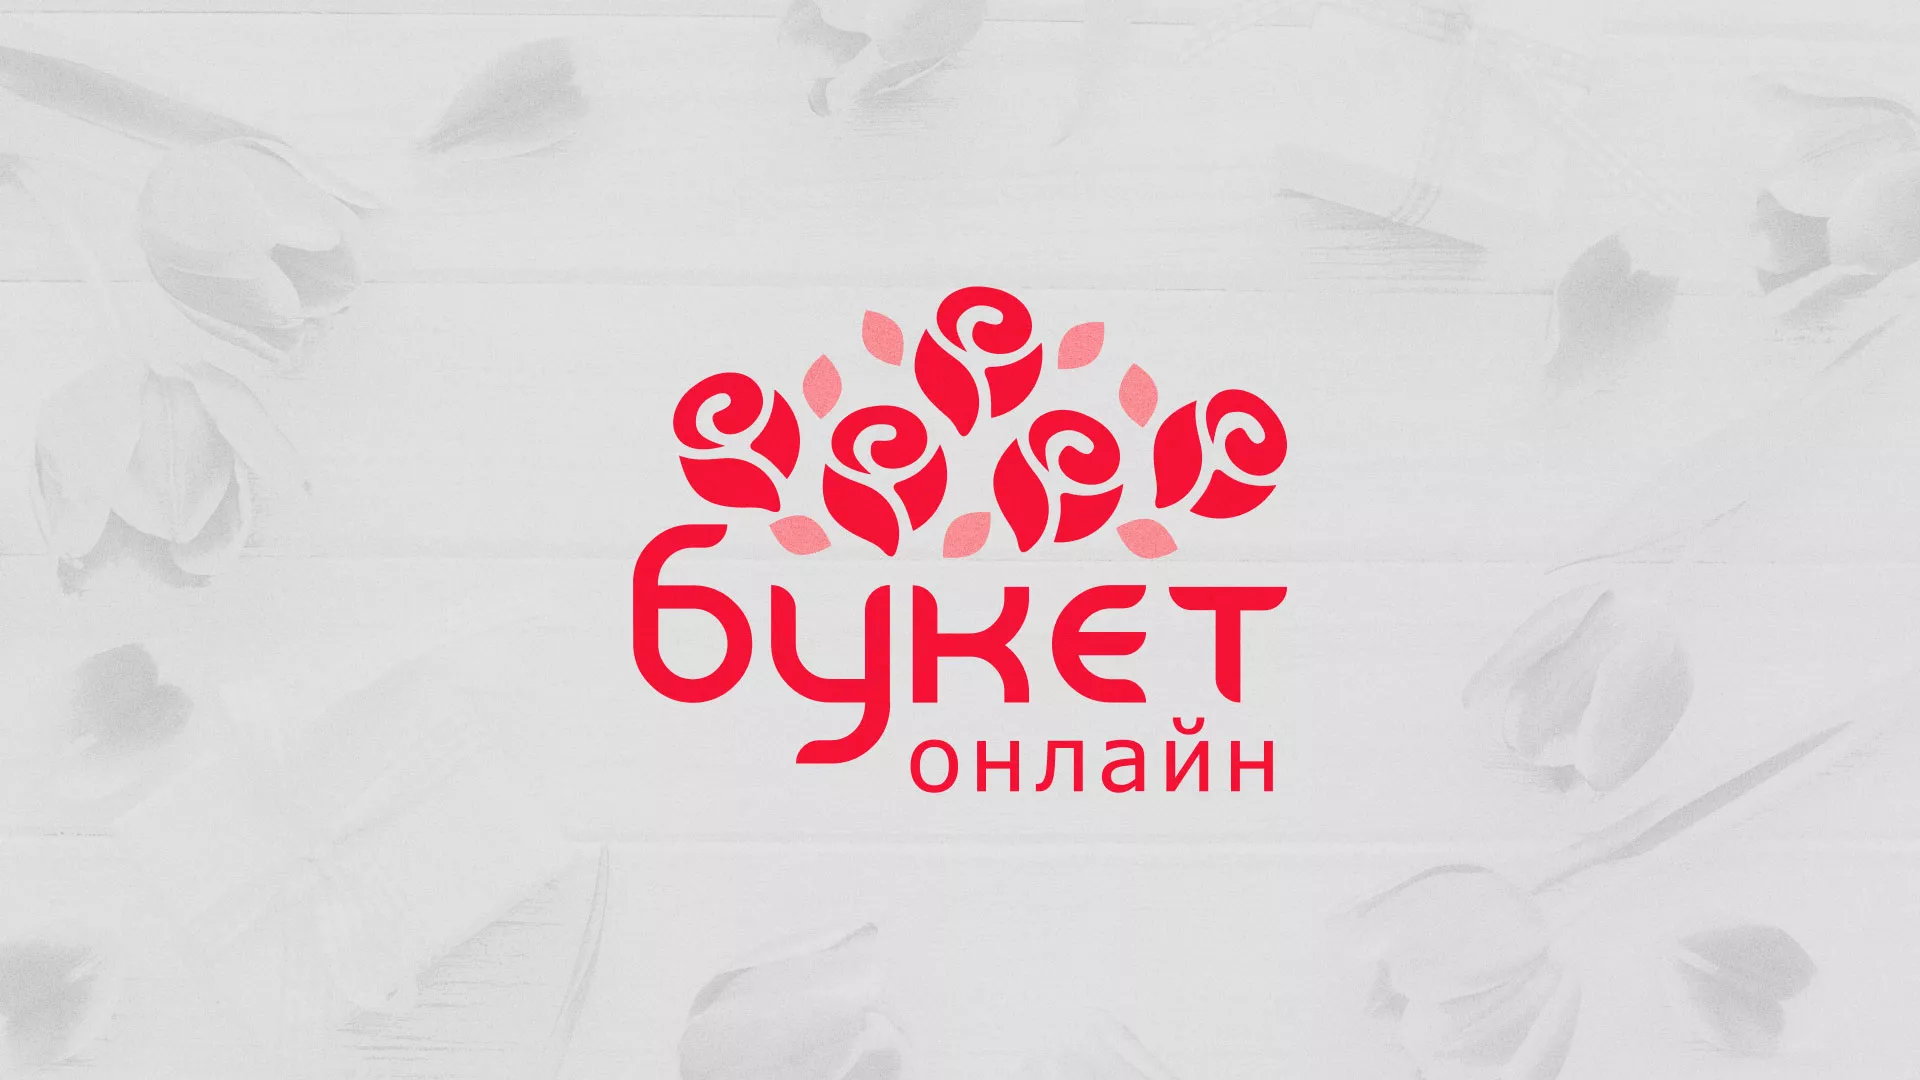 Создание интернет-магазина «Букет-онлайн» по цветам в Фурманове